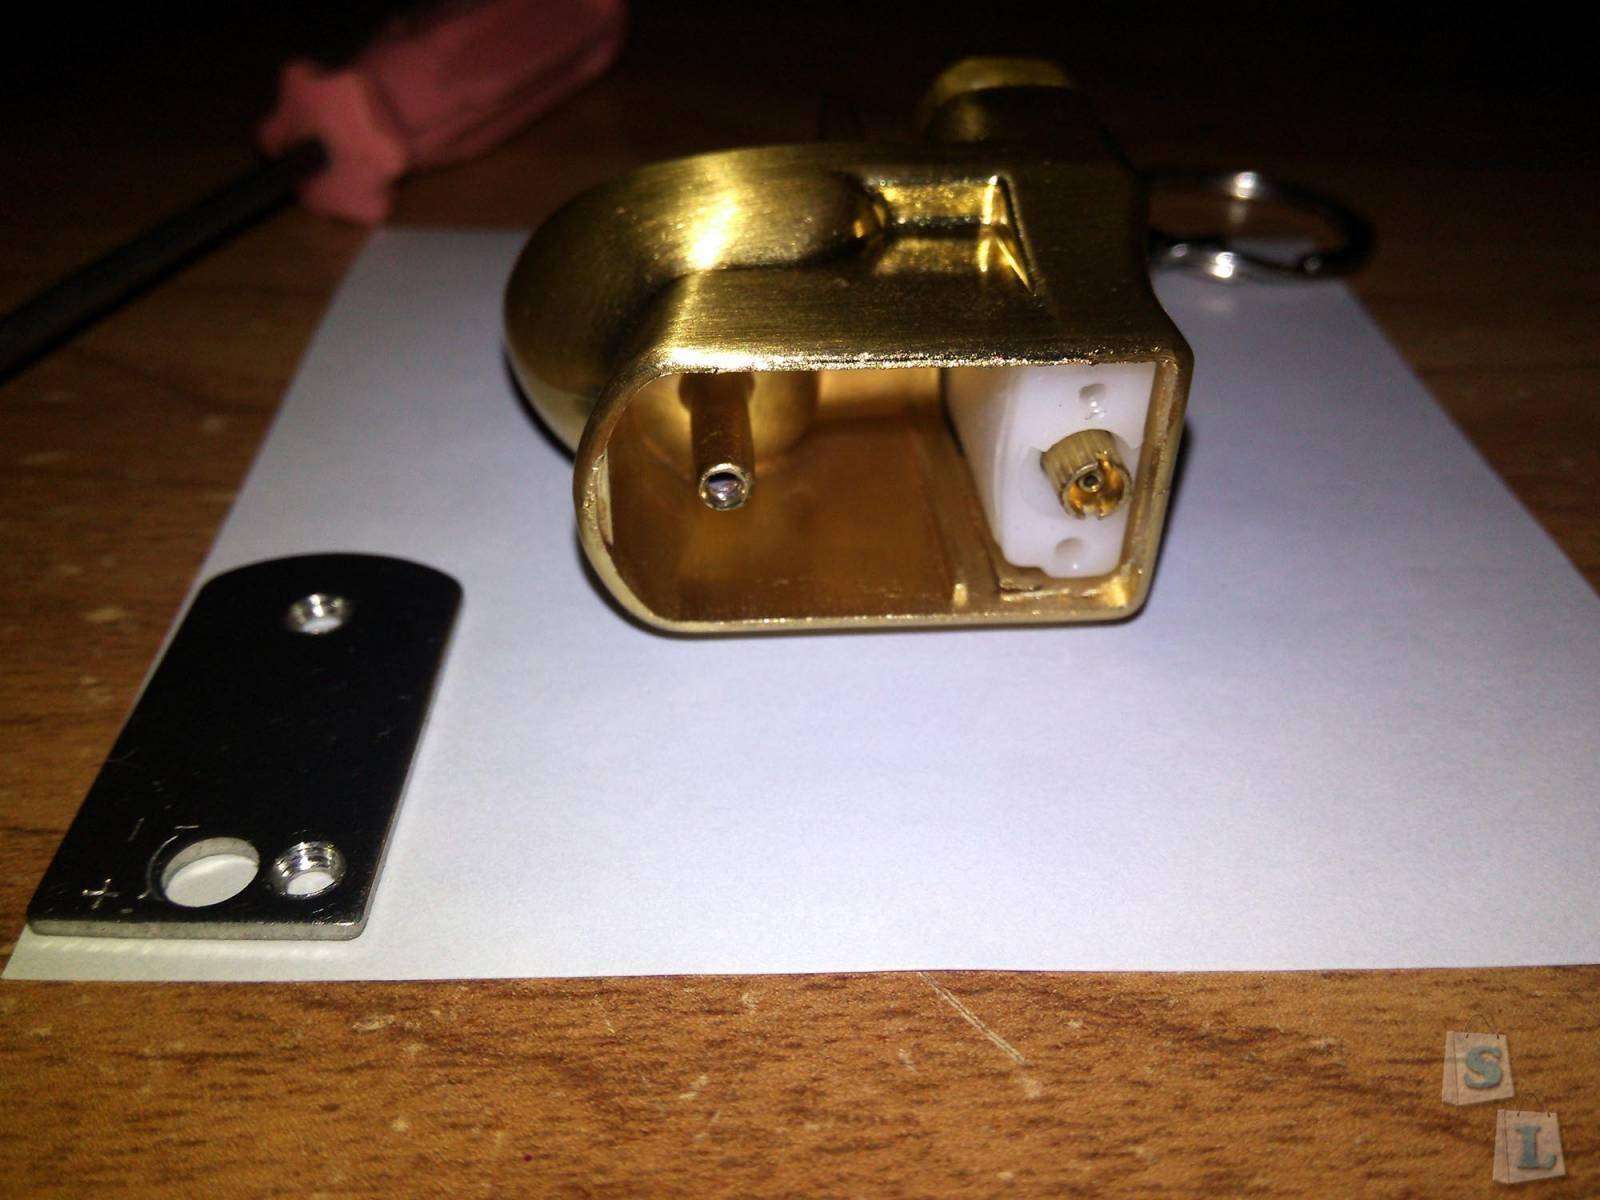 TinyDeal: Зажигалка - золотой унитаз, почти! Или прикурить от унитаза!